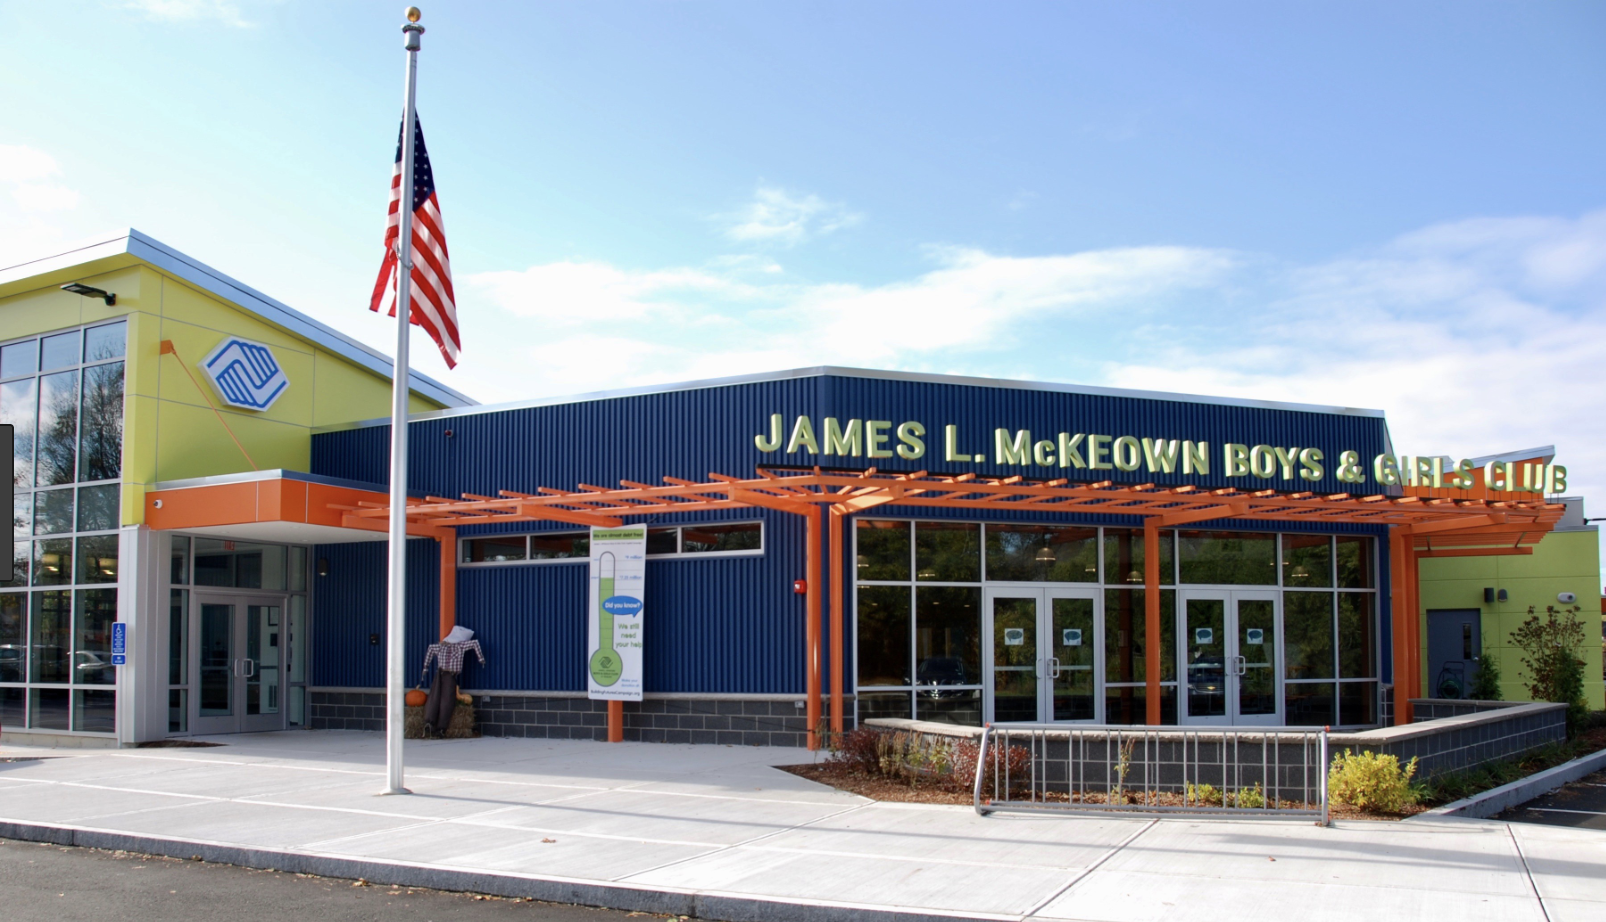 James L.McKeown Boys & Girls Club of Woburn, MA